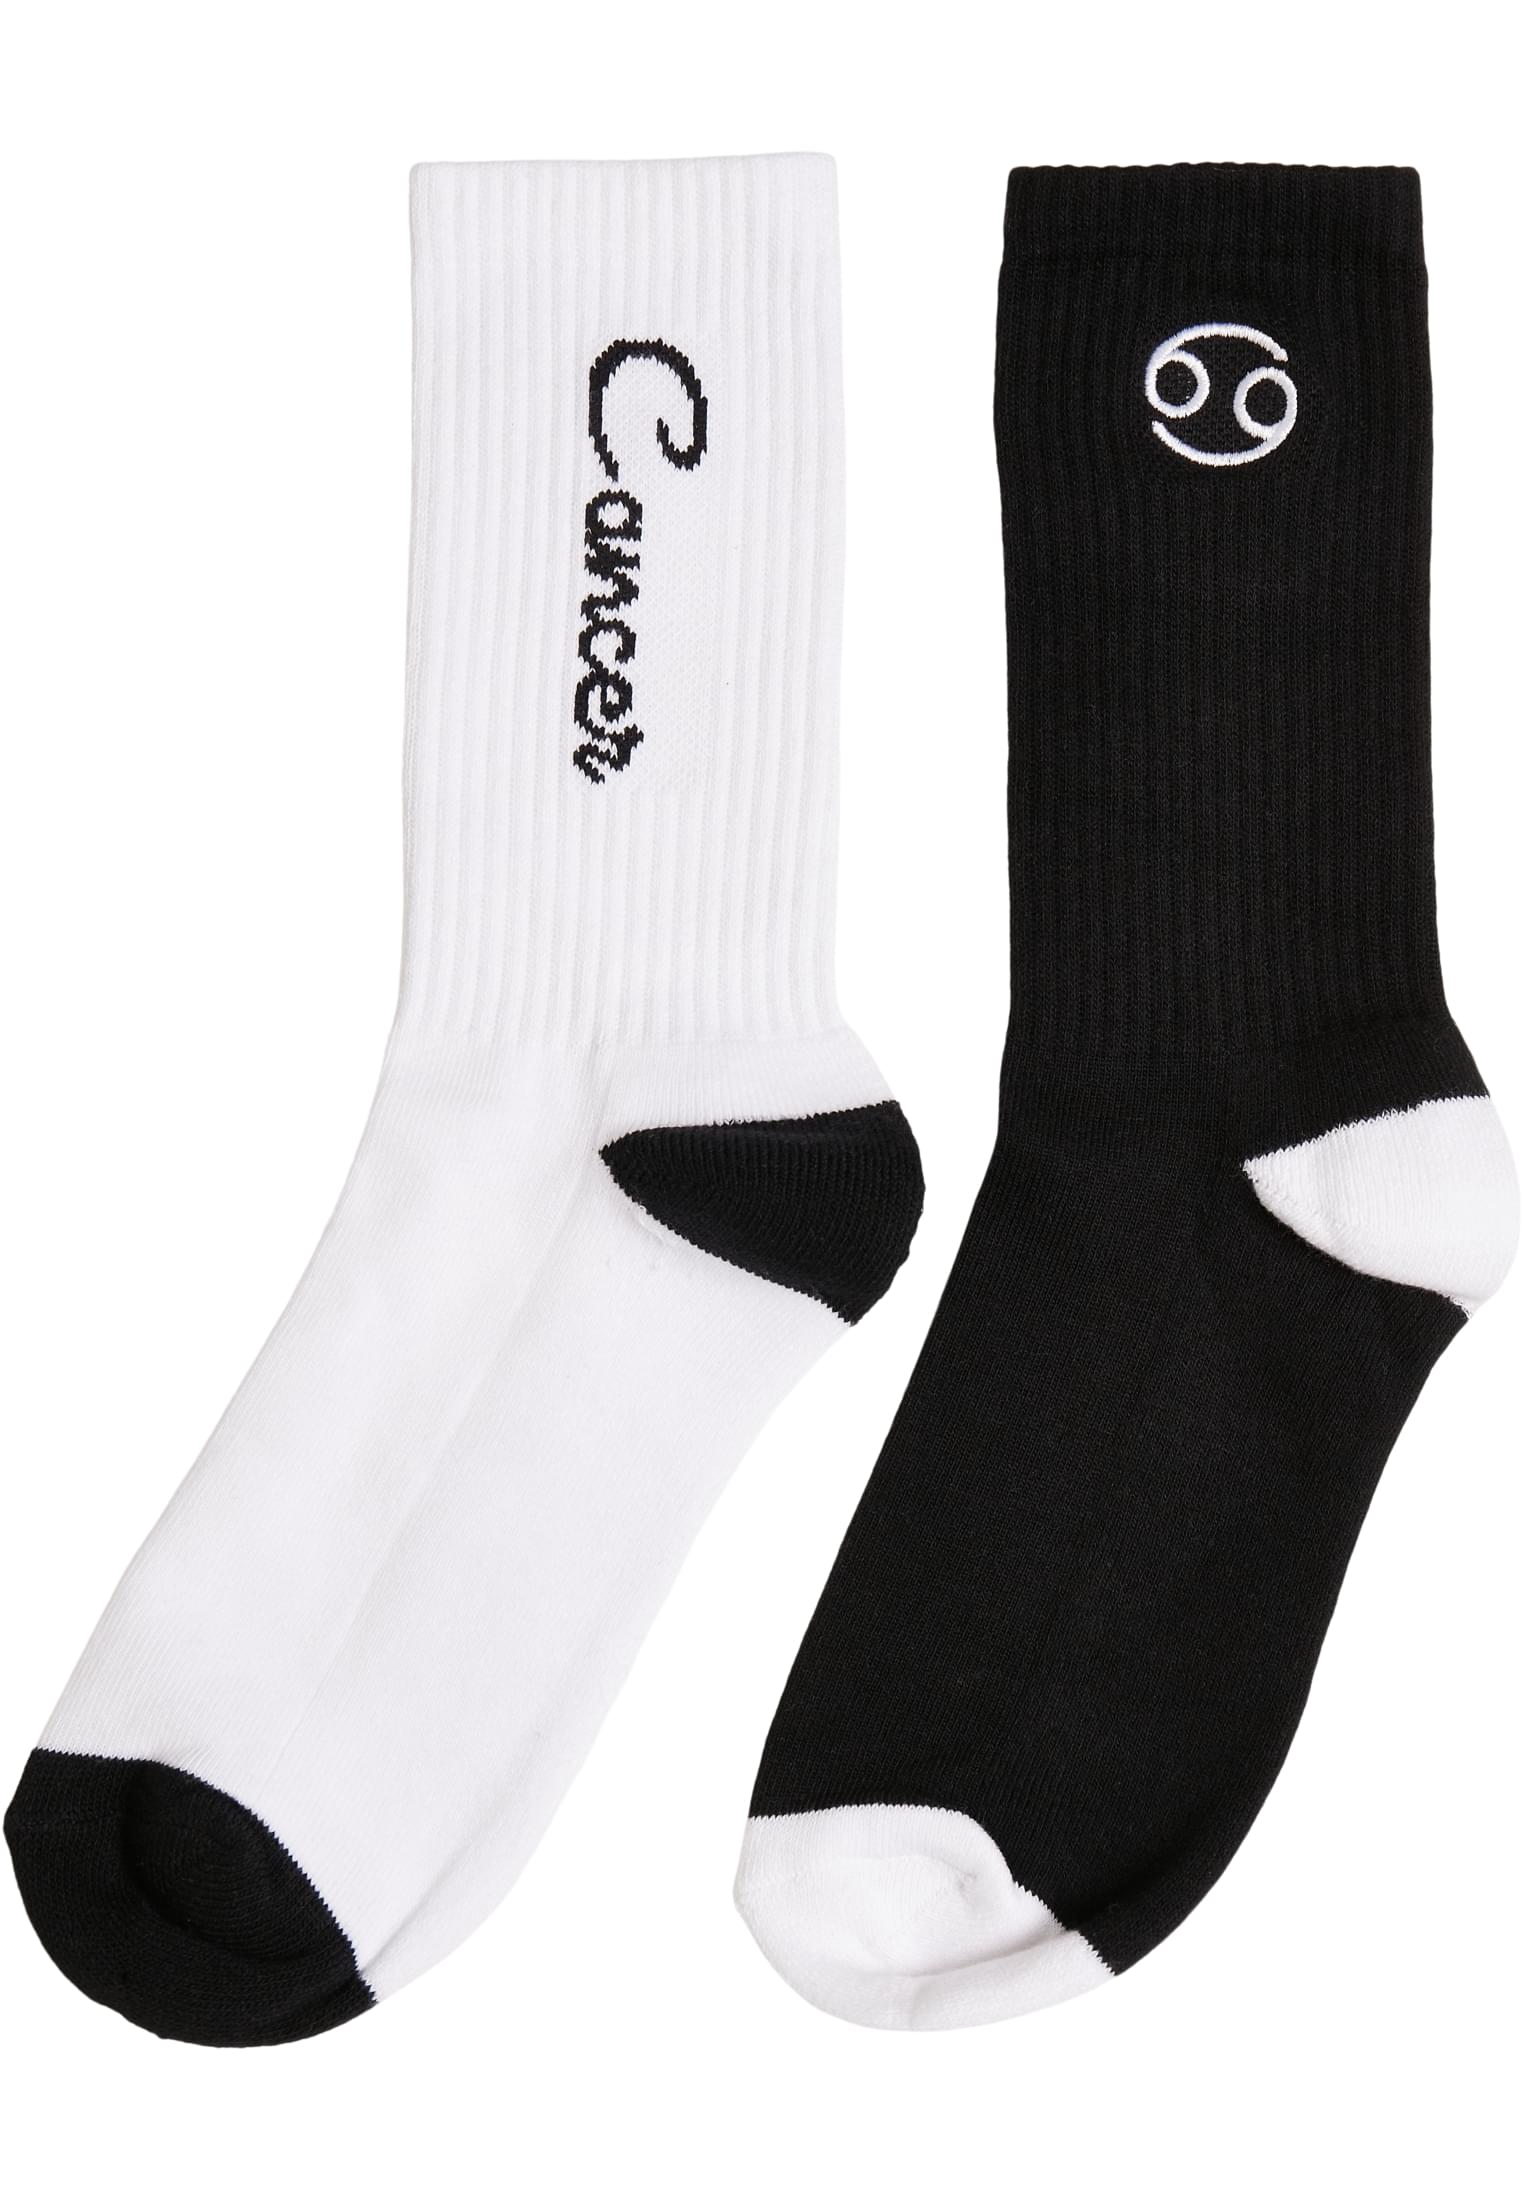 Zodiac Socks 2-Pack Black/White Cranch